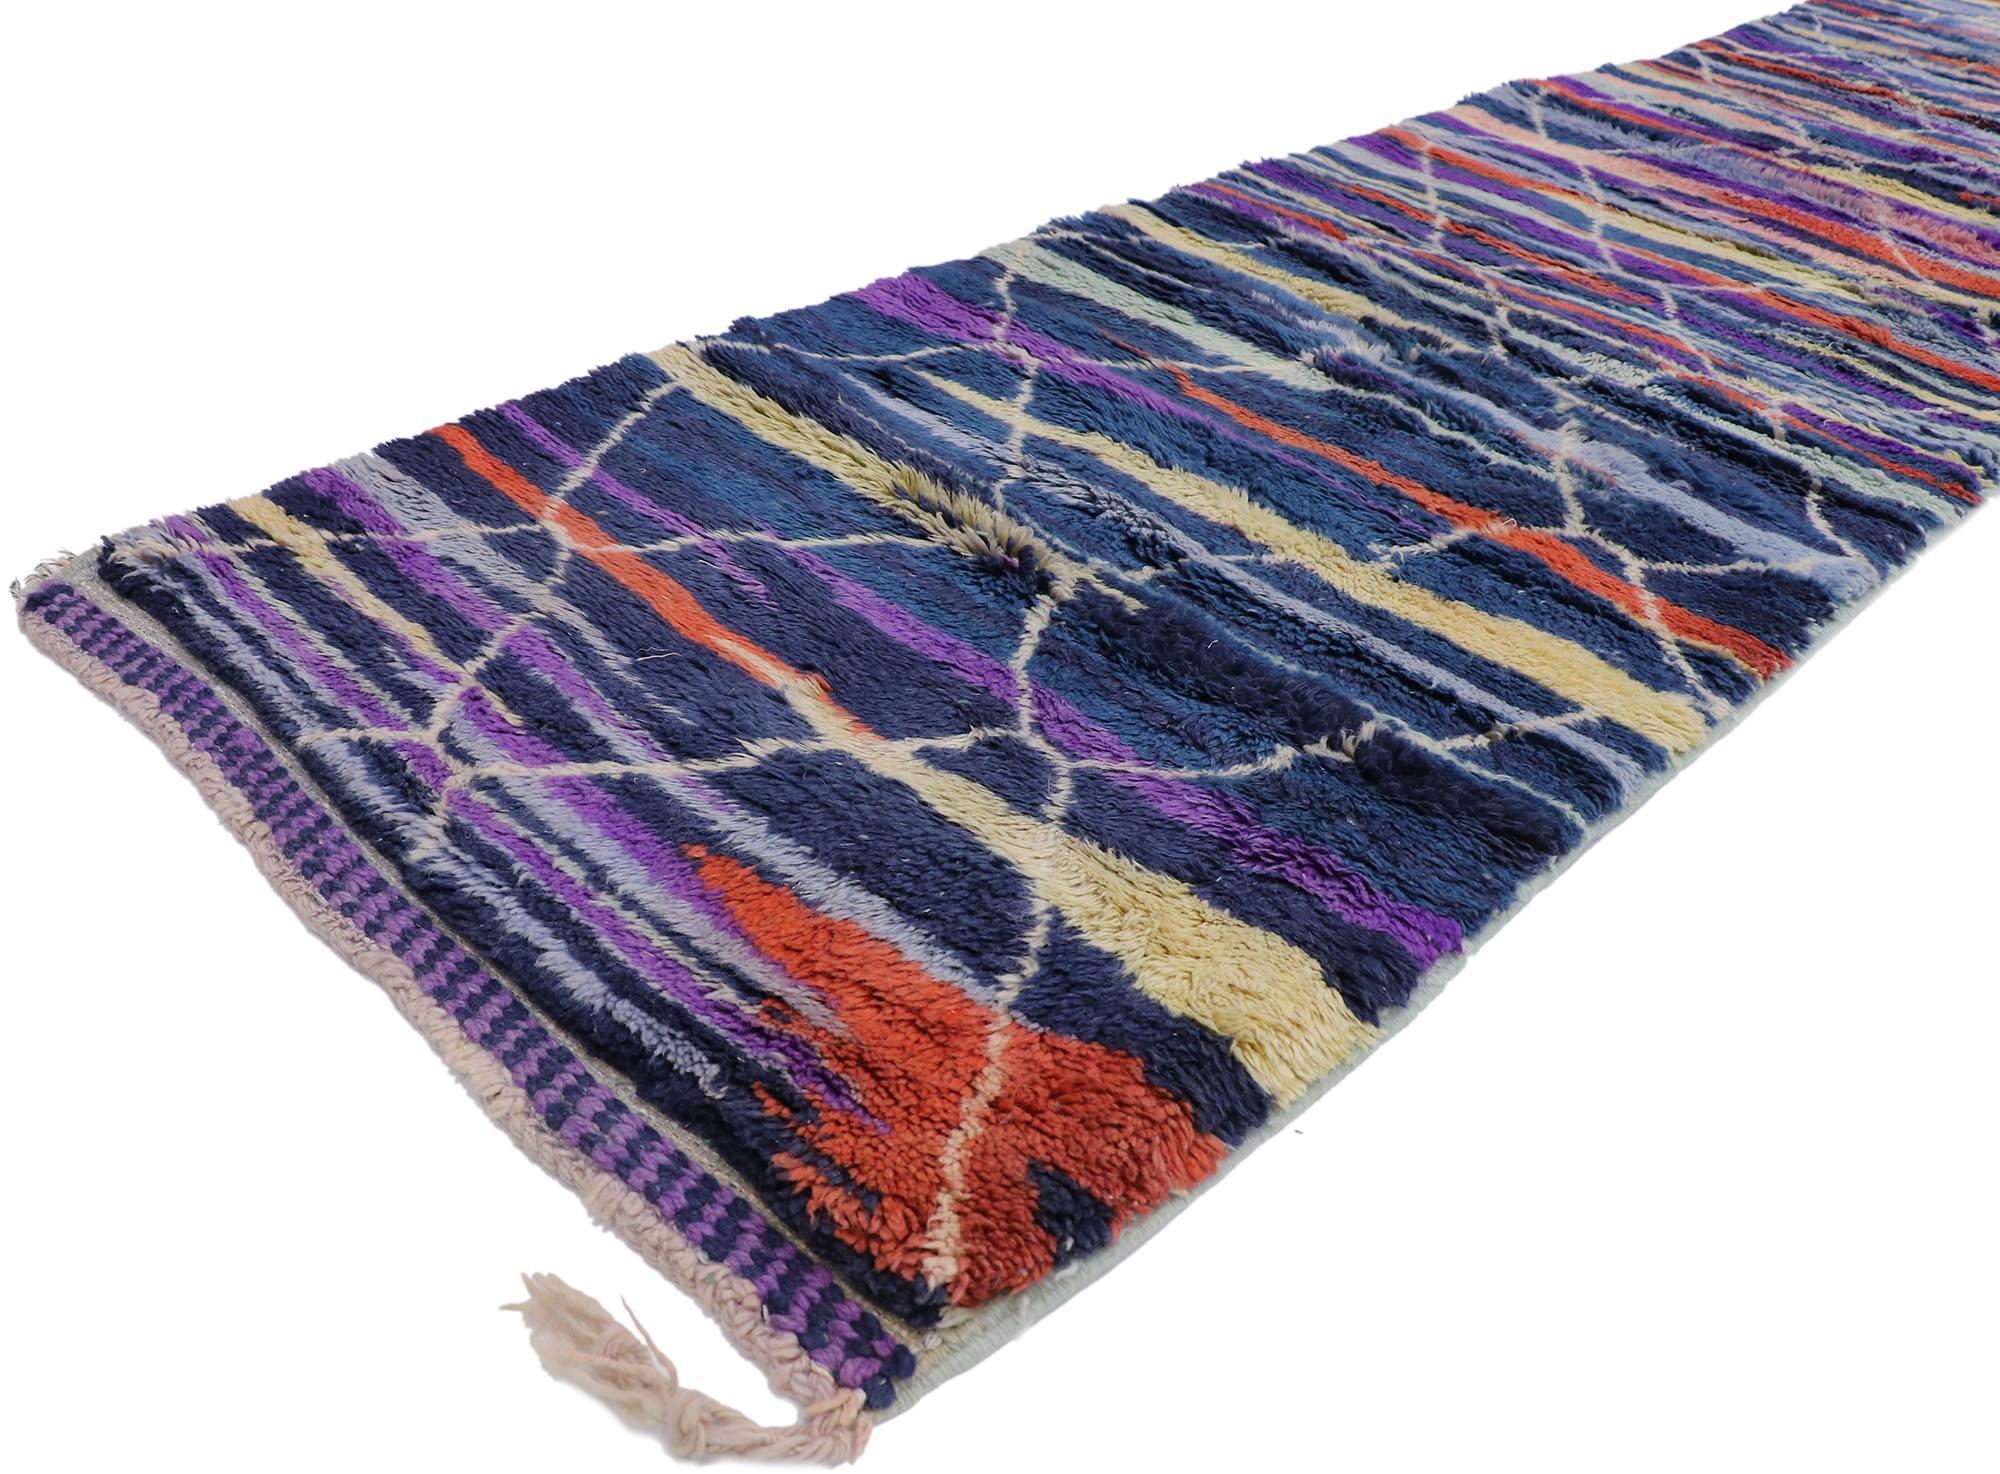 21092 Nouveau Tapis marocain berbère contemporain inspiré par Sol LeWitt 02'04 x 13'05. Avec son design expressif et audacieux, ses détails et sa texture incroyables, ce tapis de course berbère marocain contemporain en laine nouée à la main est une